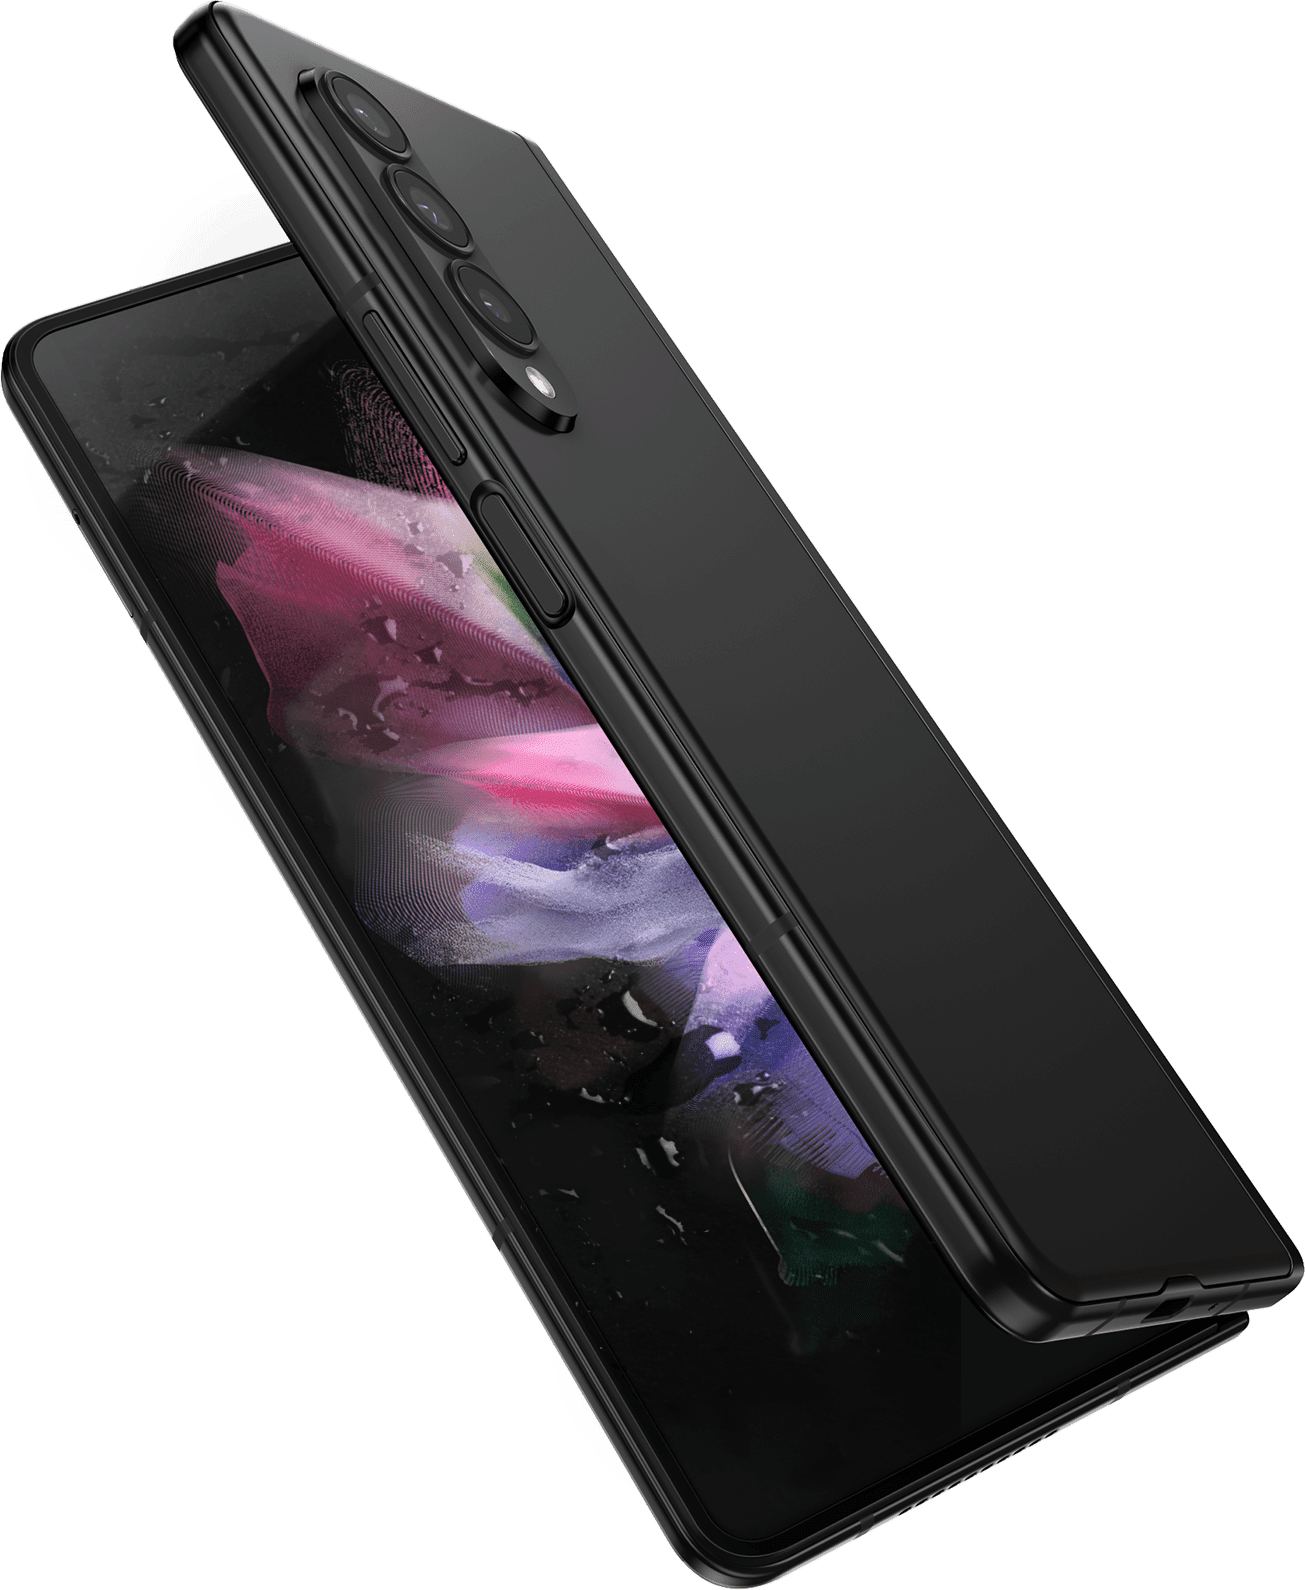 Das Galaxy Z Fold3 5G ist teilweise aufgefaltet und wird von vorne mit einem bunten Hintergrundbild auf dem Hauptdisplay gezeigt. Es ist von Wasserspritzern umgeben.